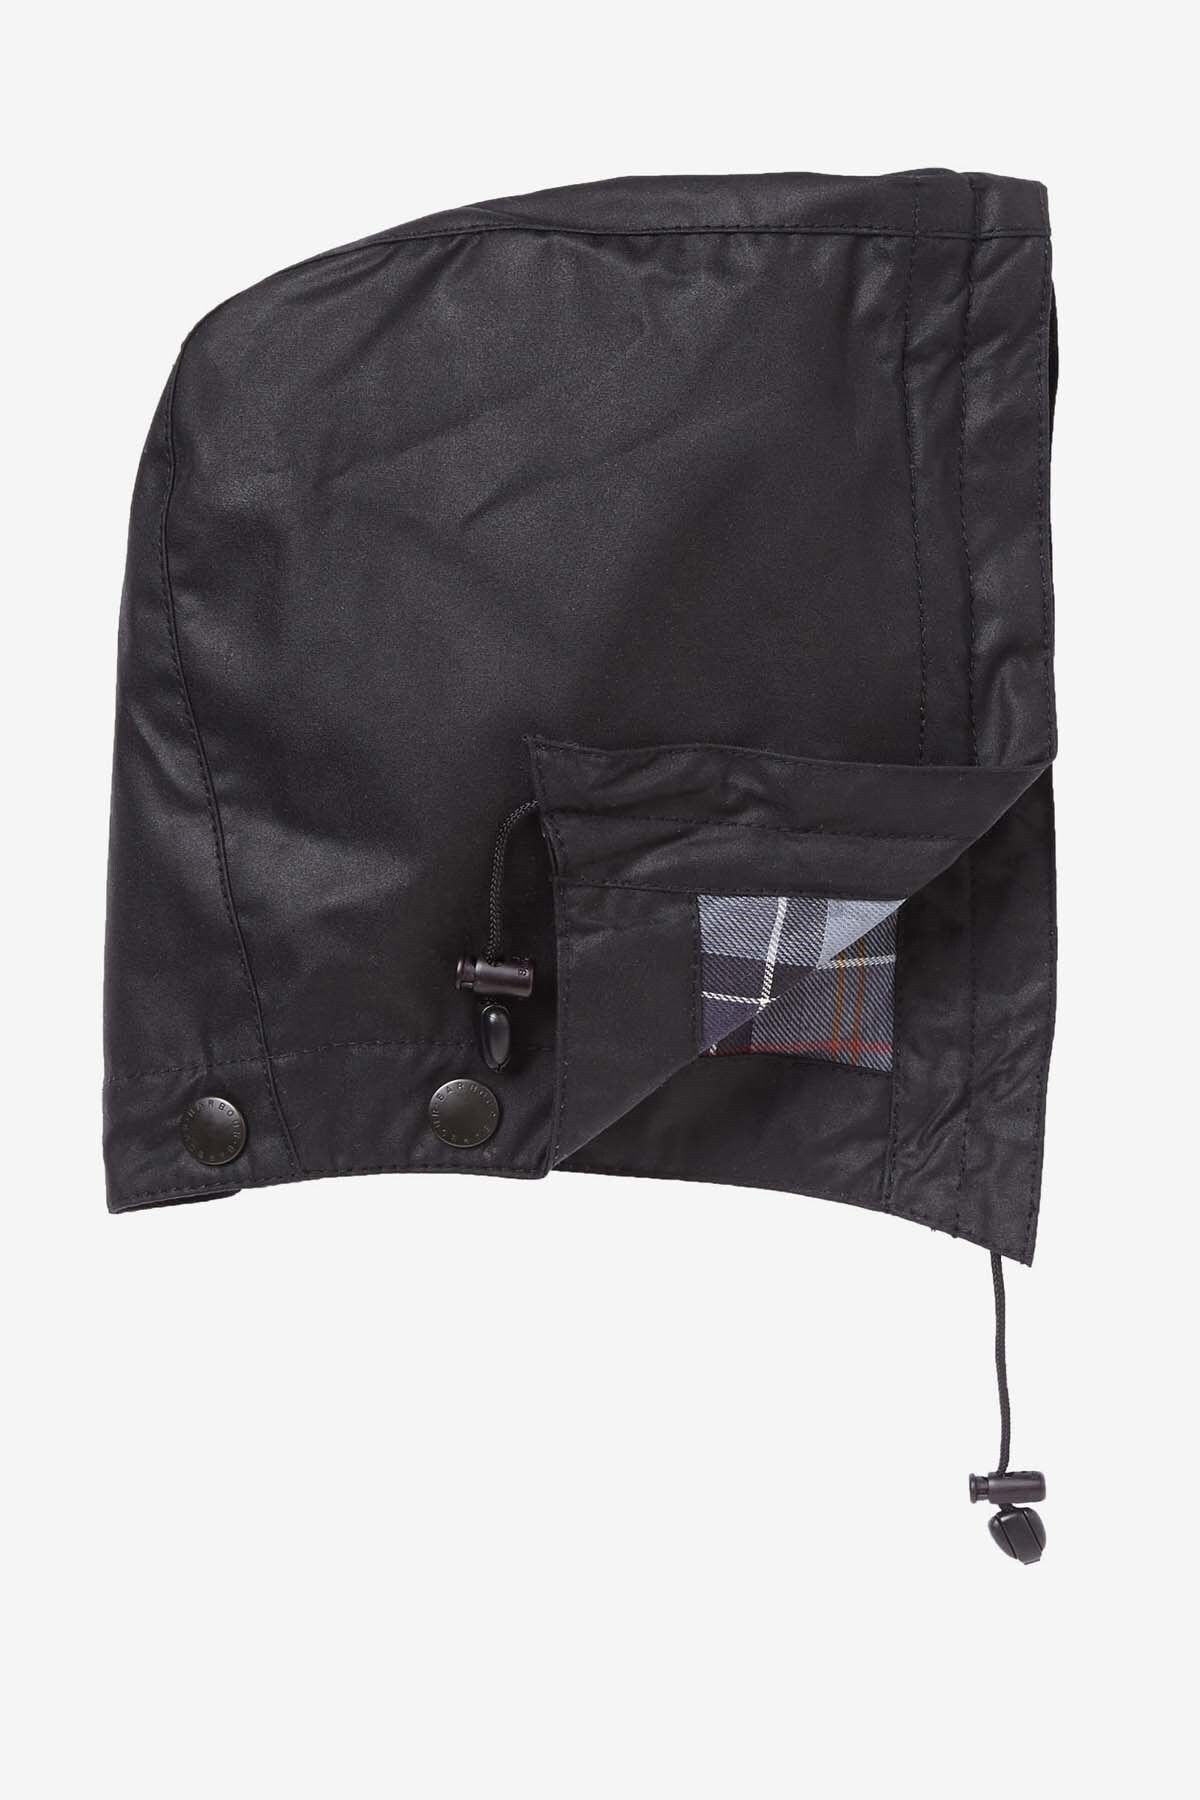 Barbour Yağlı Kapüşon - Klasik Ceketler Ile Uyumludur Bk91 Black